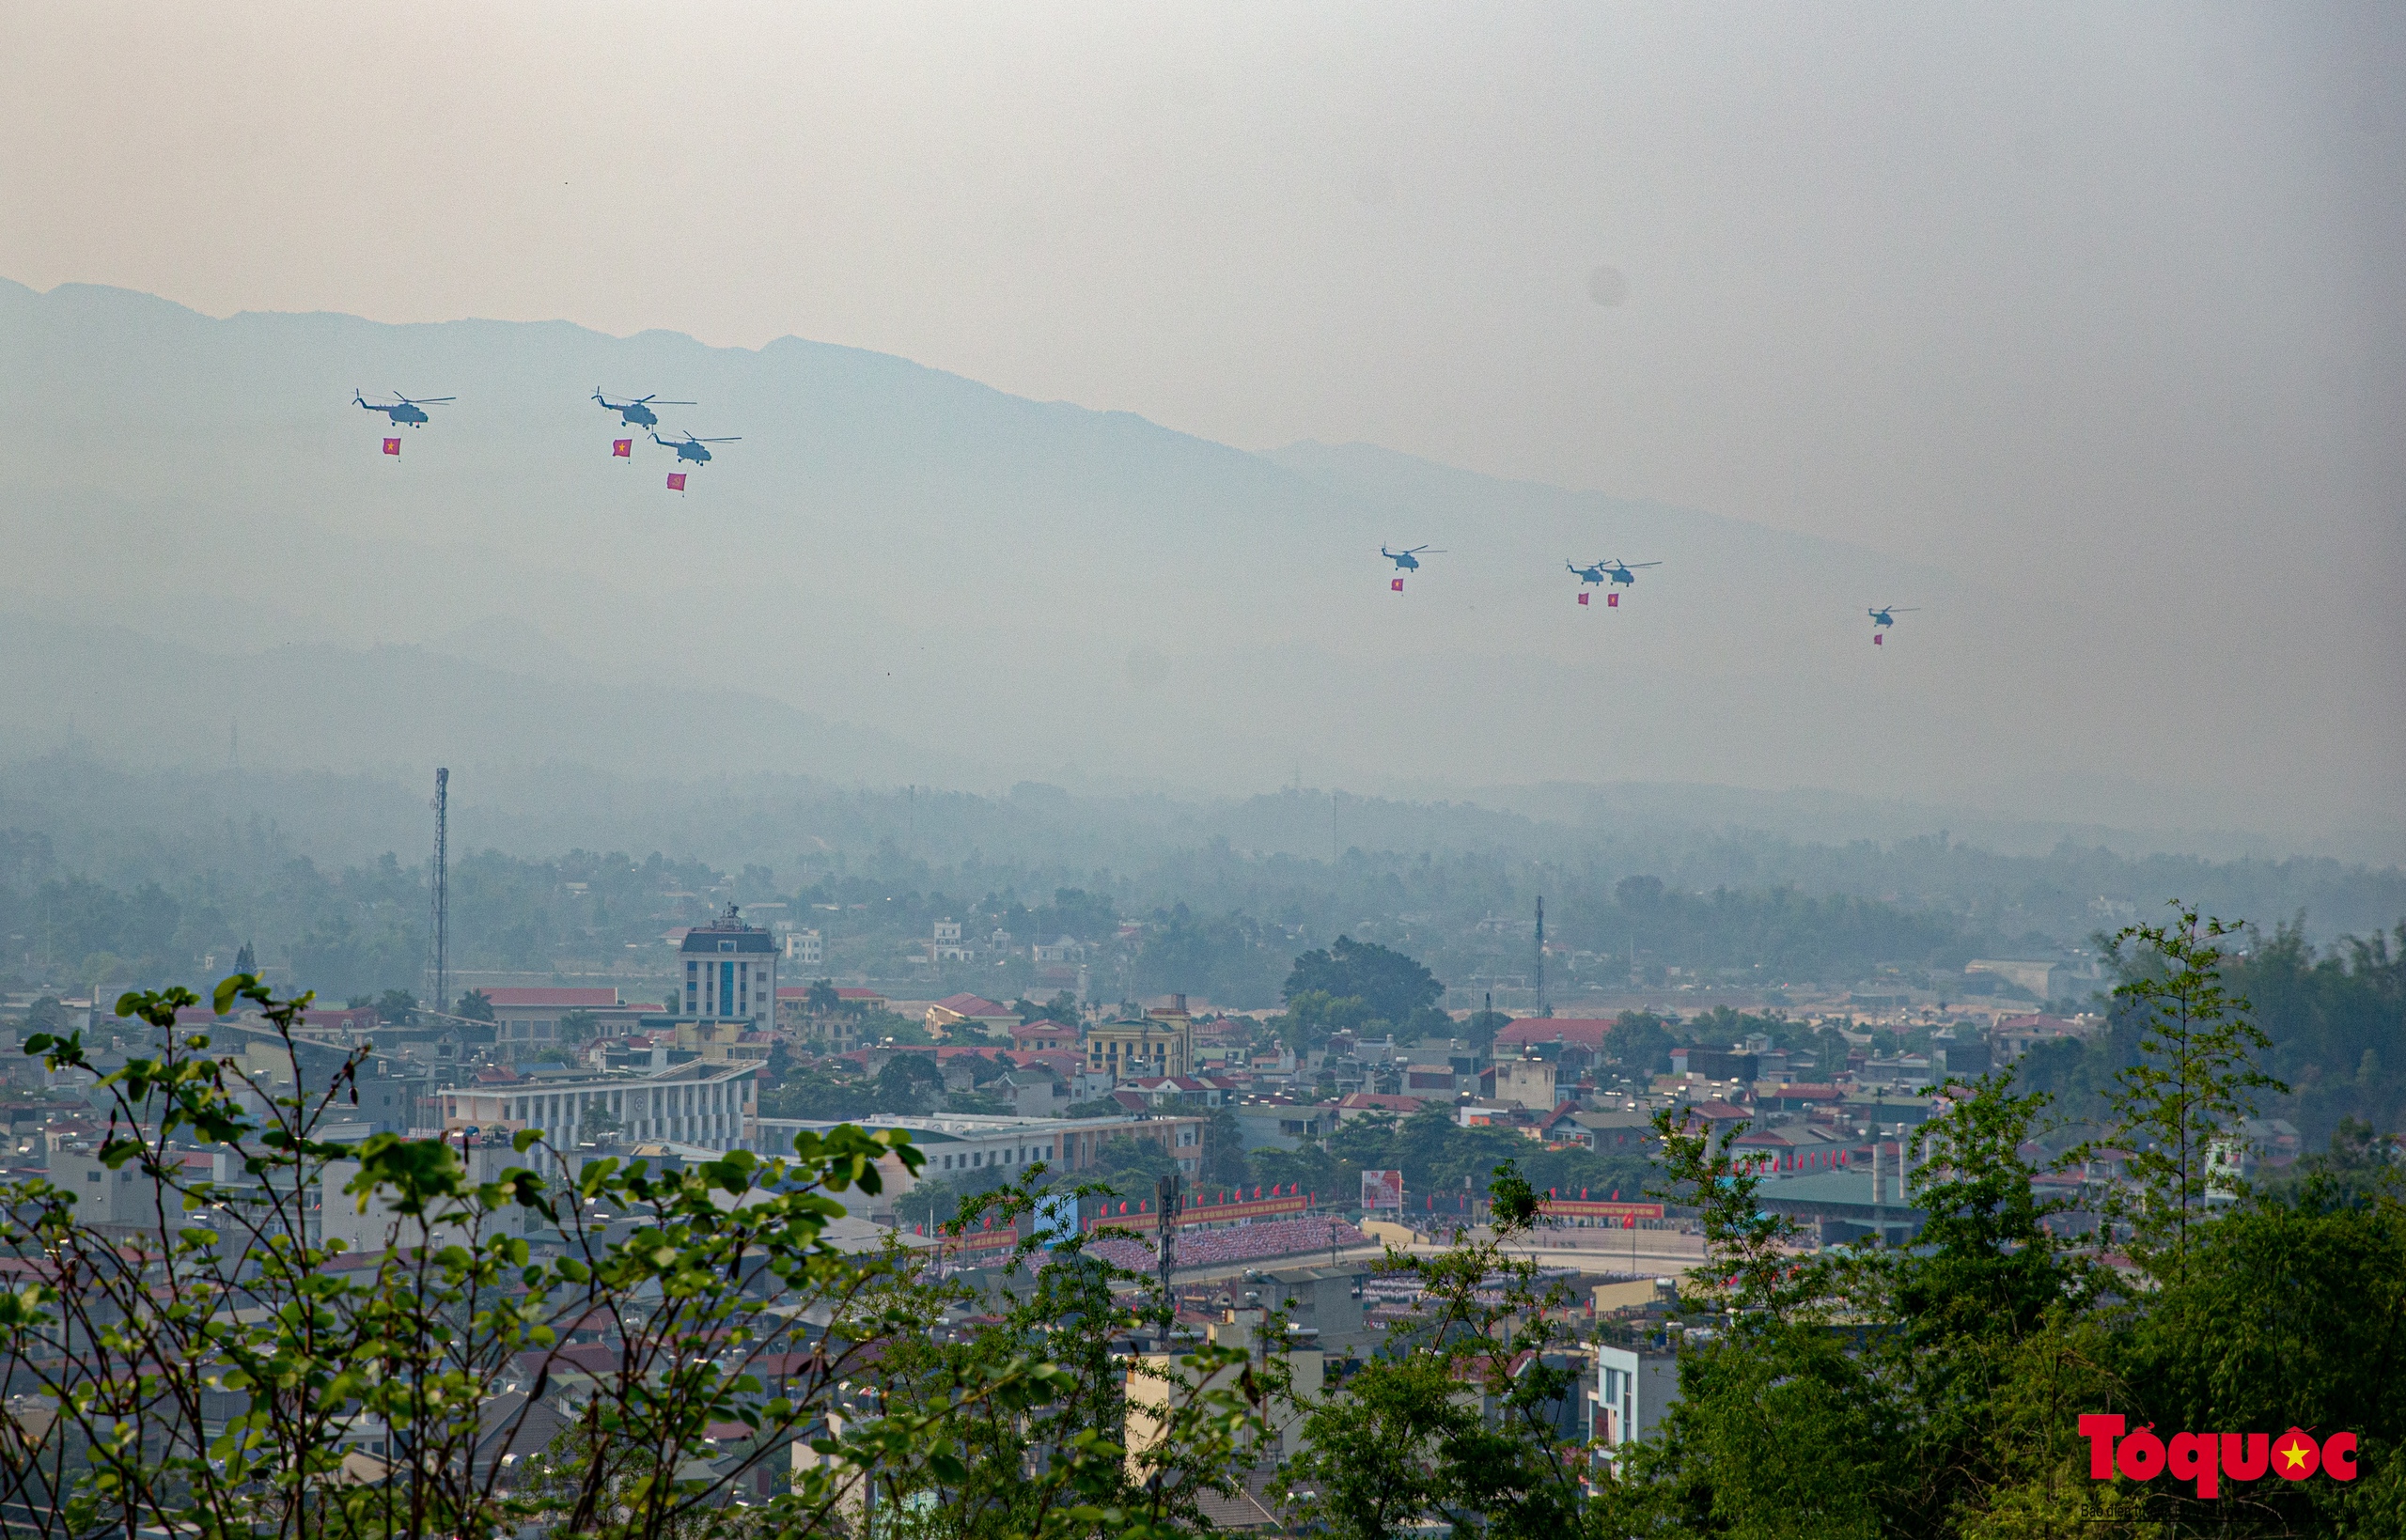 Ấn tượng với màn diễu binh của biên đội trực thăng bay trên bầu trời Điện Biên lịch sử - Ảnh 1.